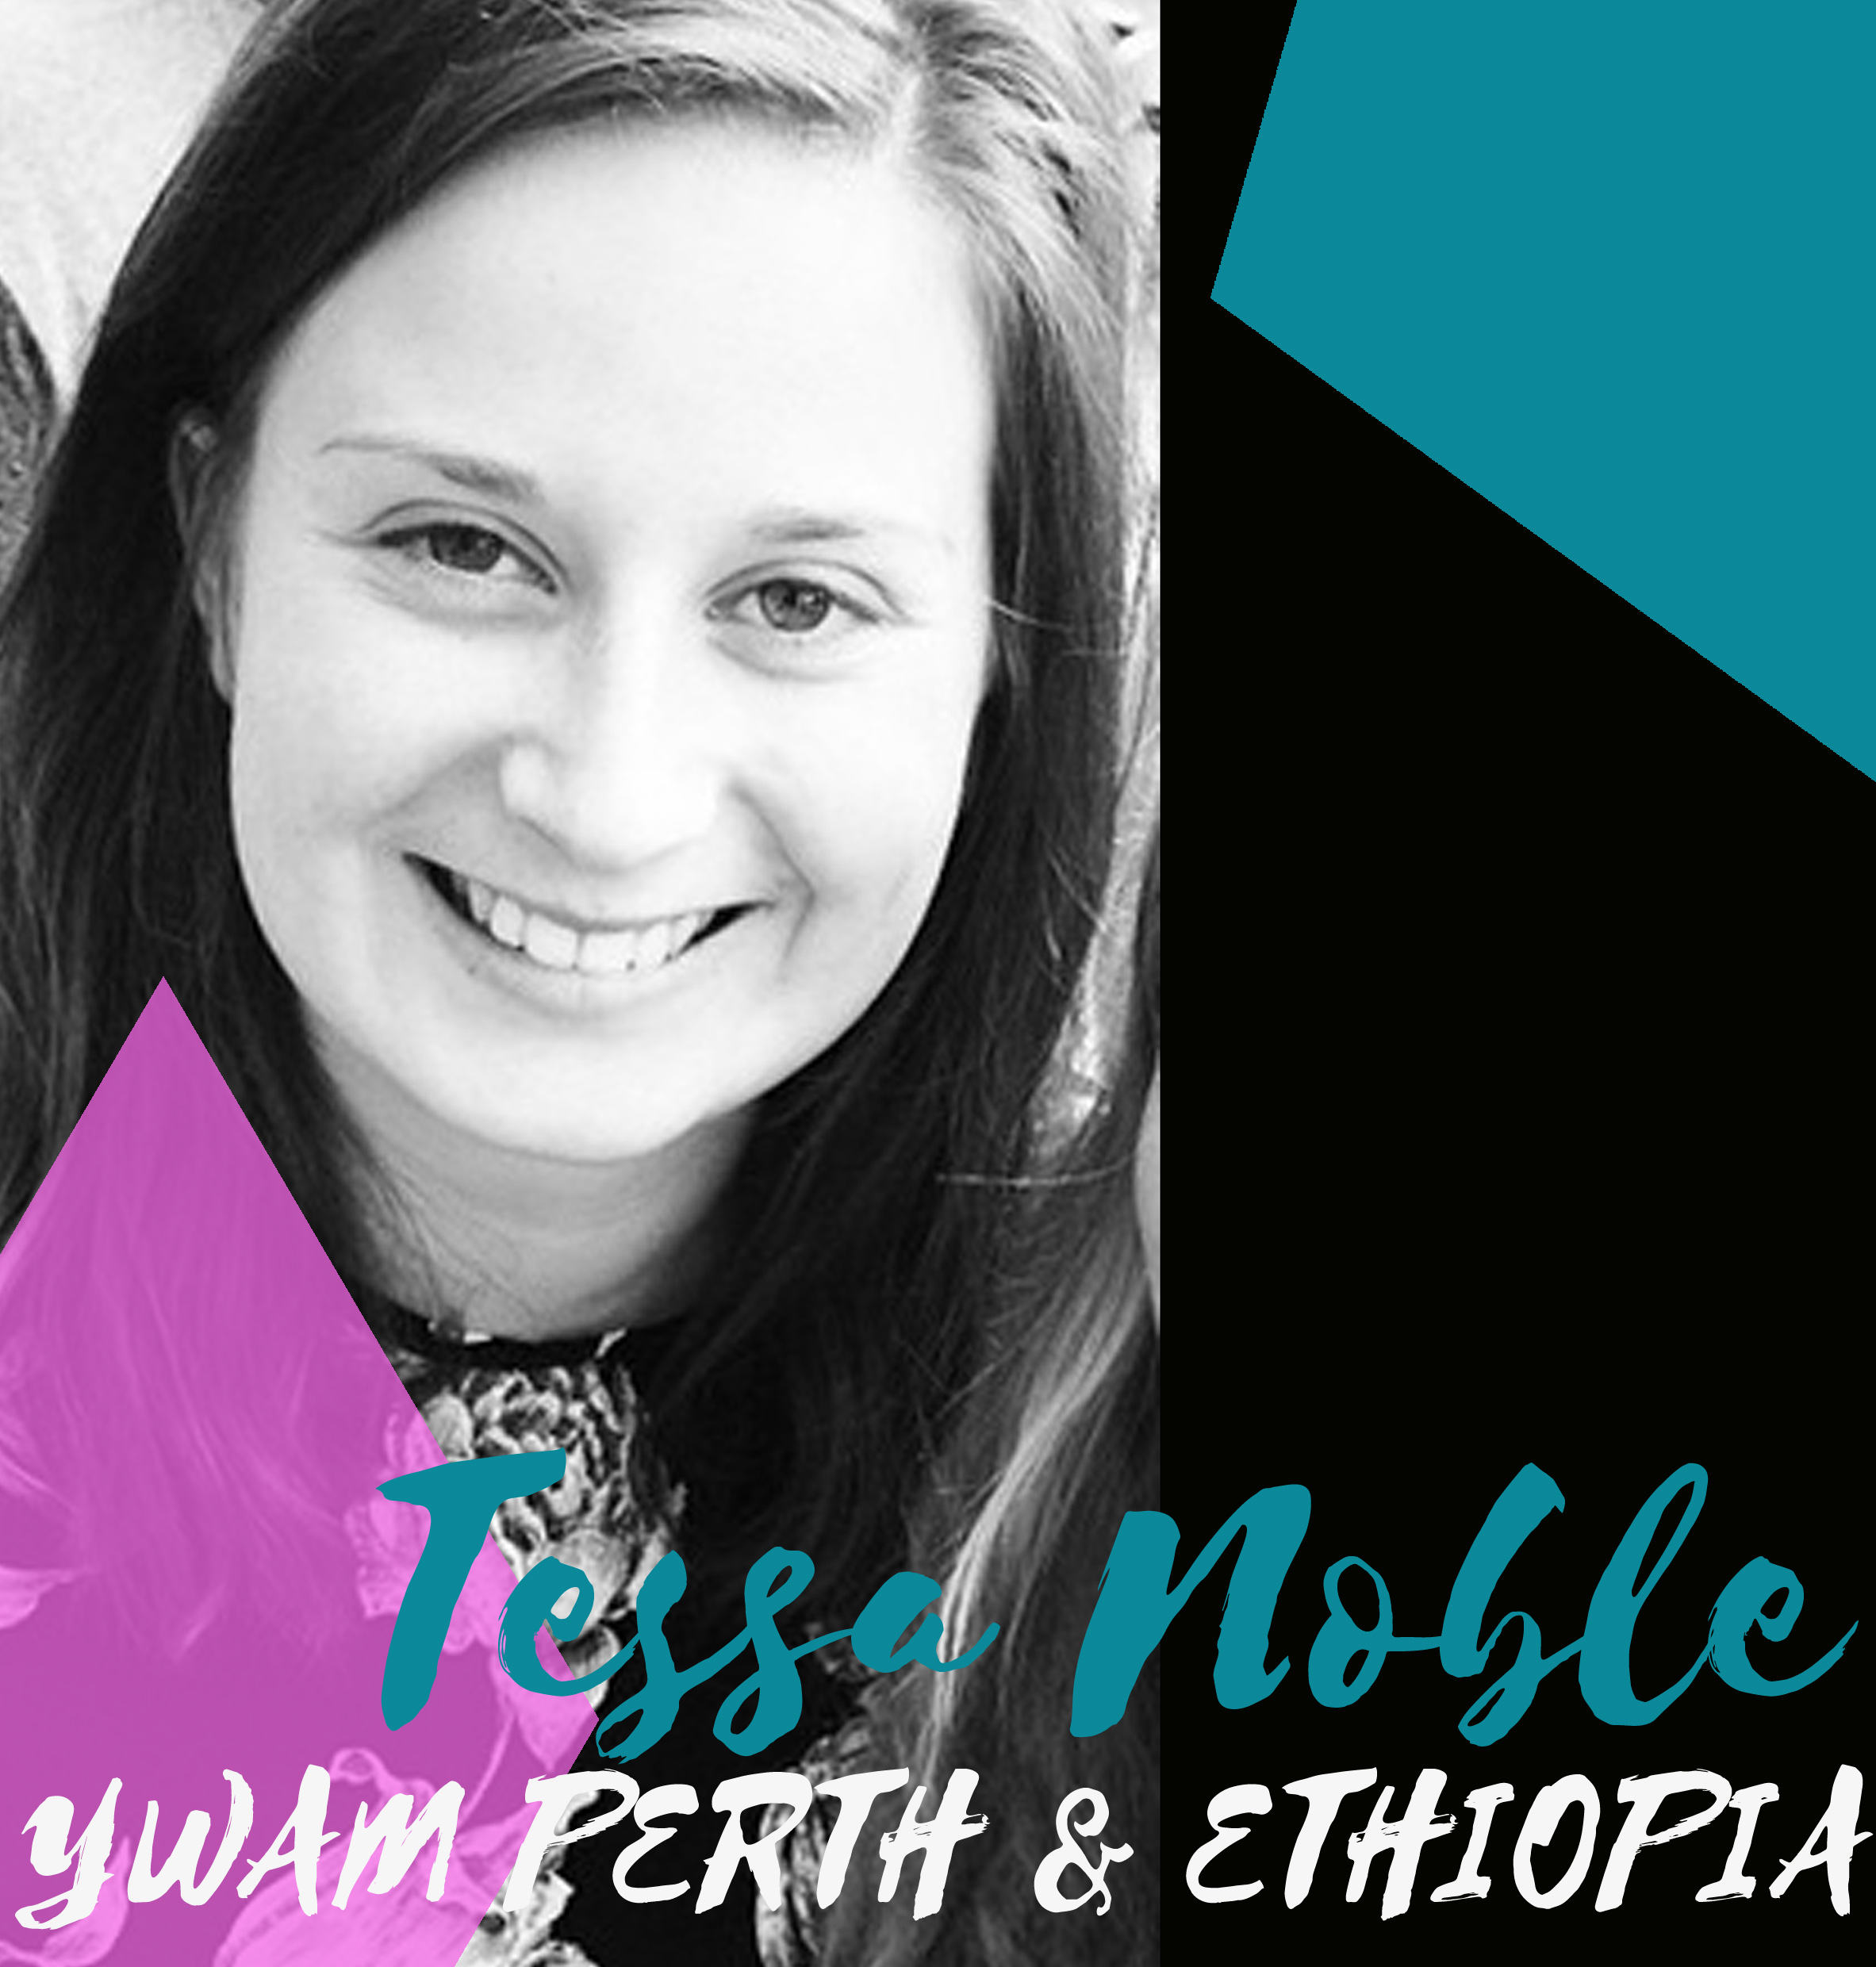 Tessa Noble - YWAM Perth & Ethiopia